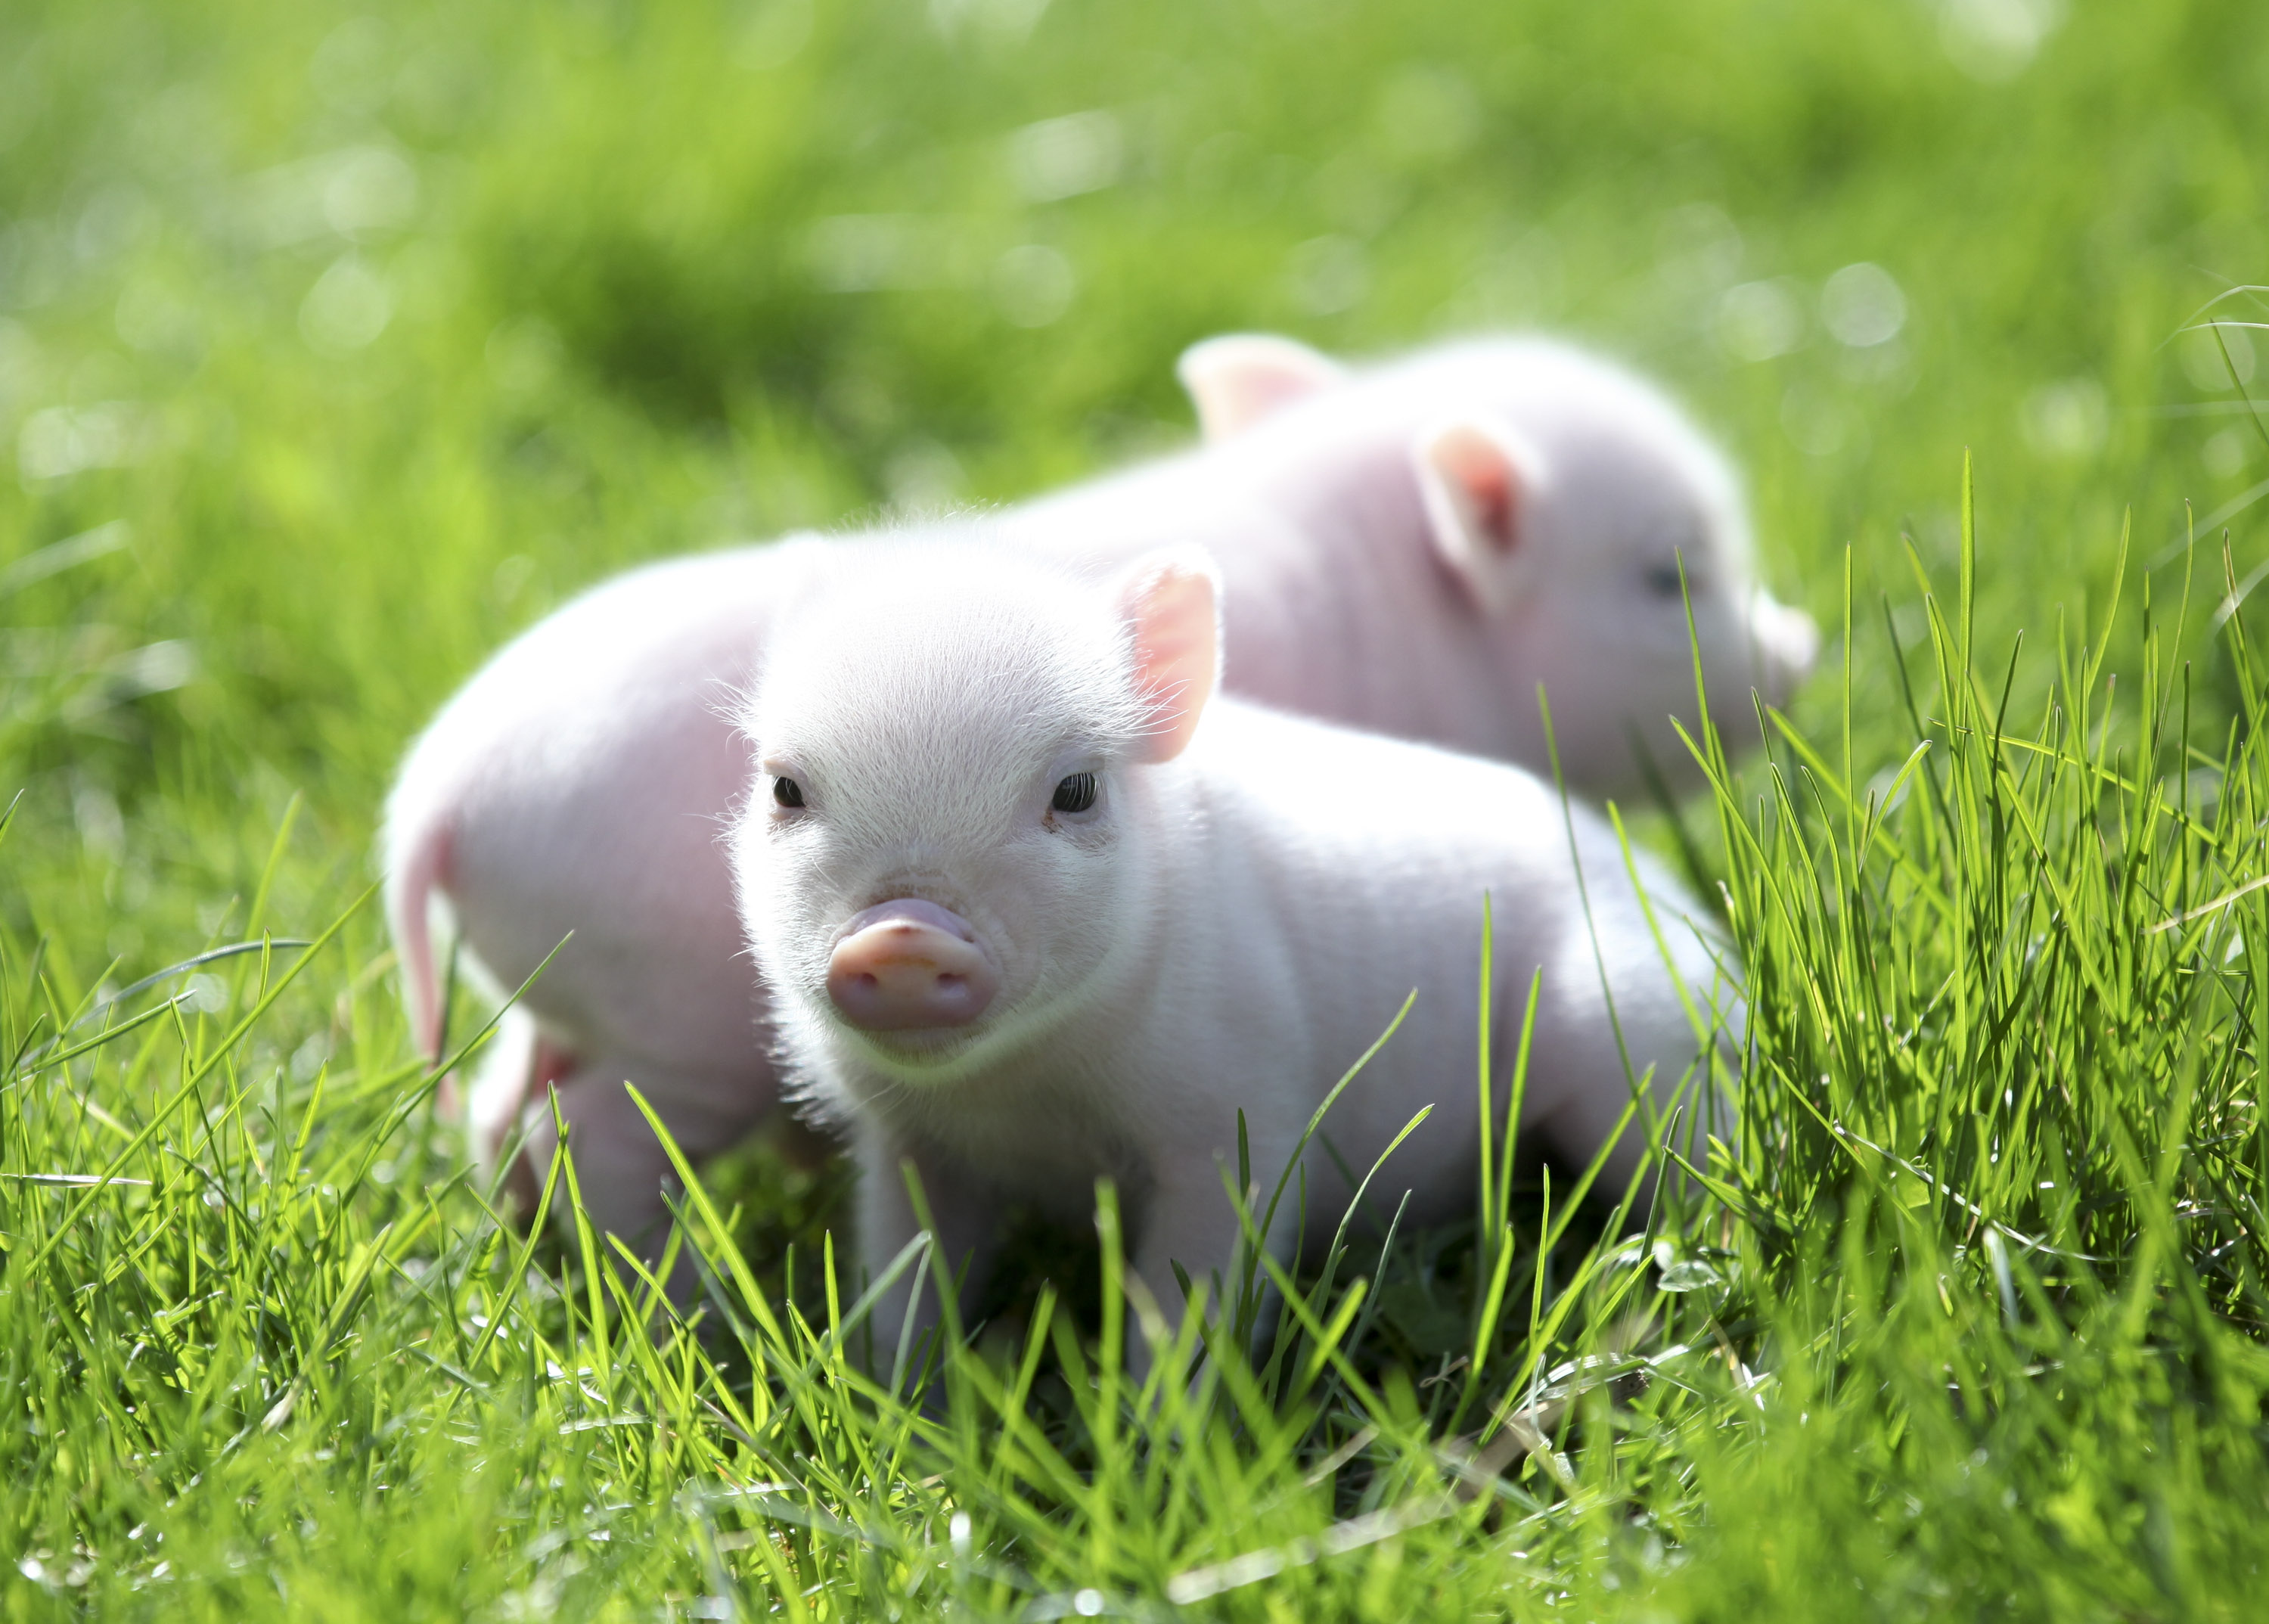 Mini Pet Piglets <3 Love 'em | Piggies! | Pinterest | Piglets ...